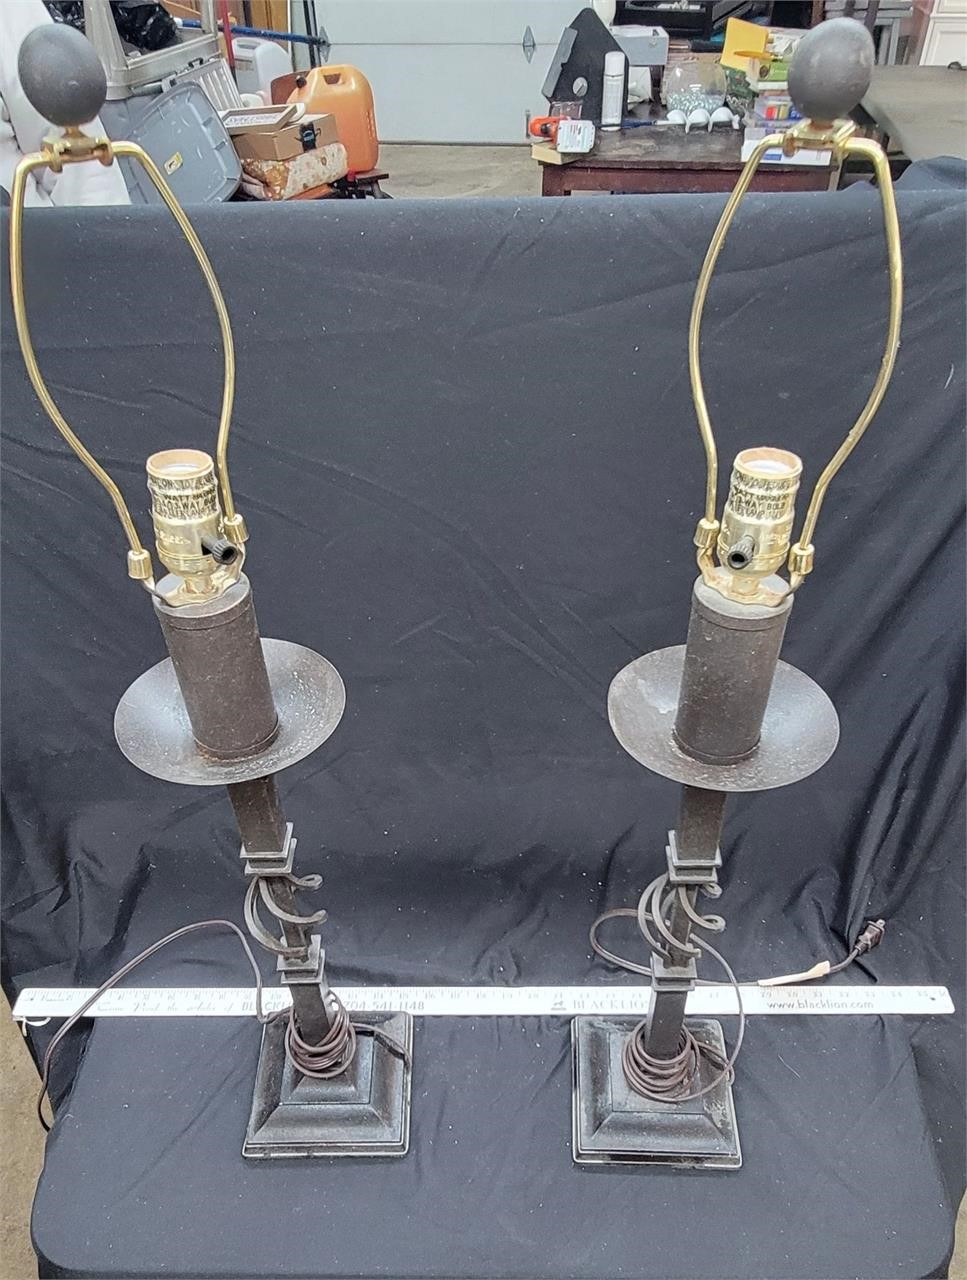 2 Metal Lamps